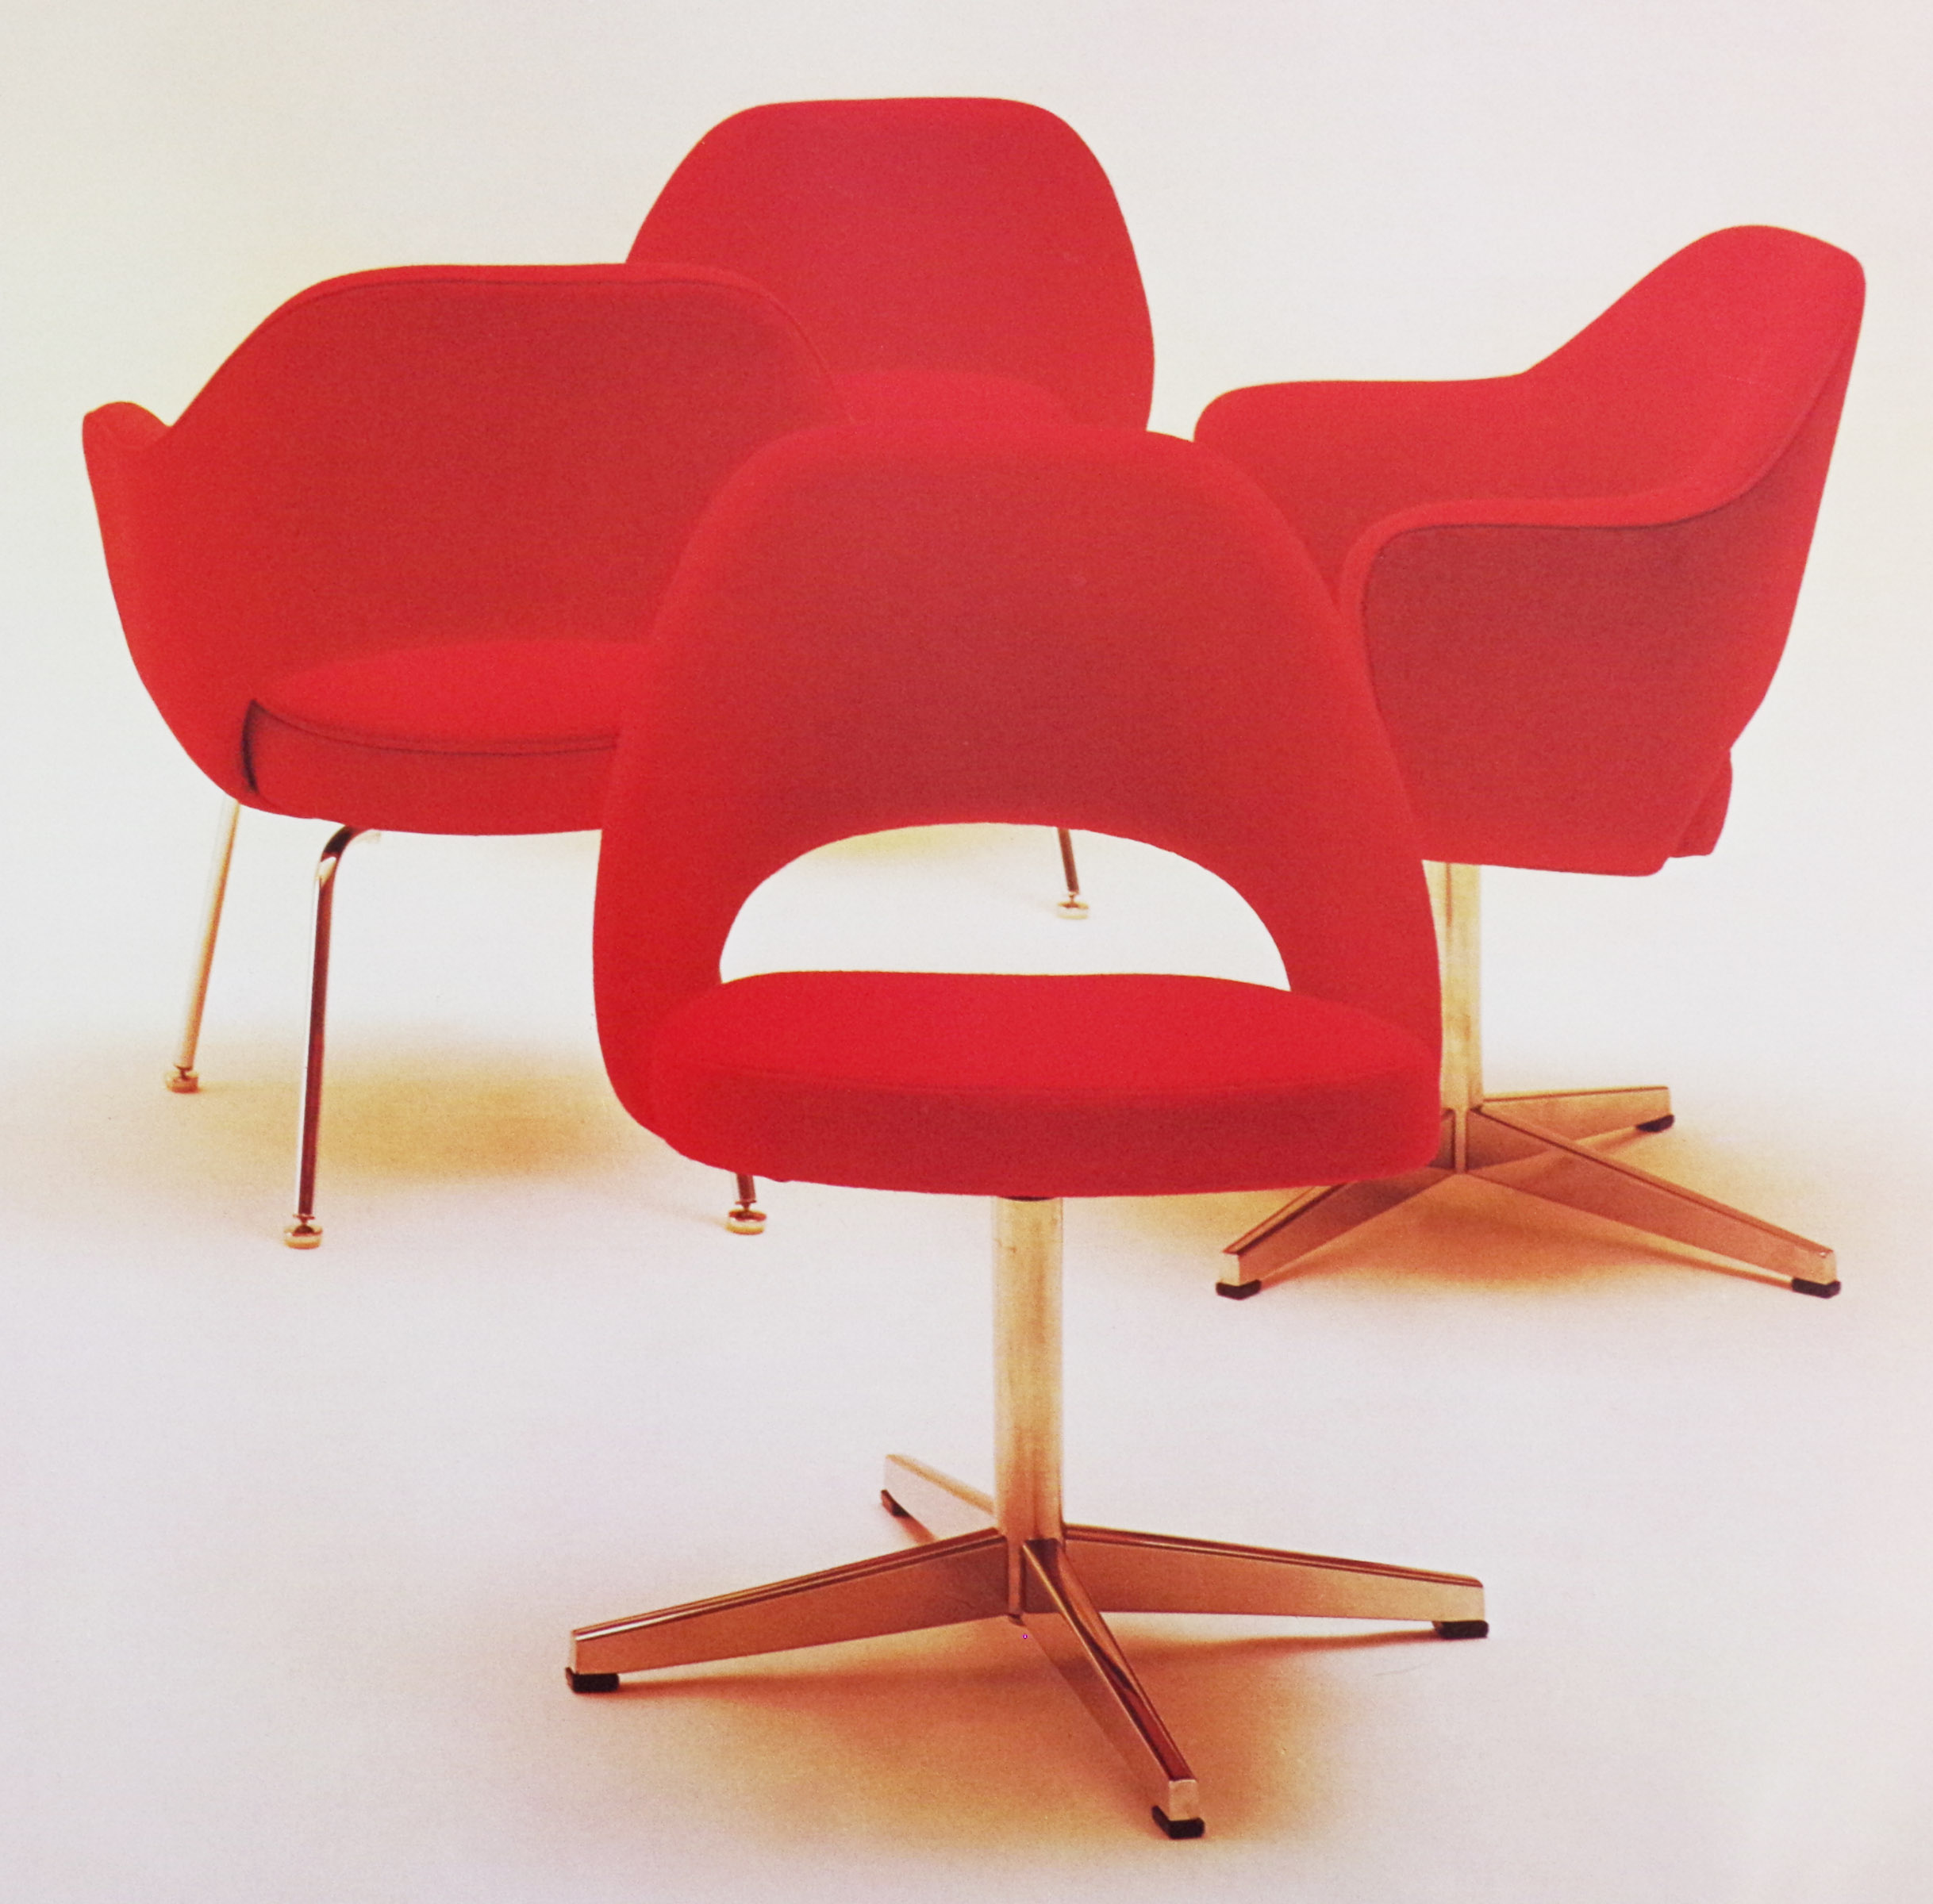 エーロ・サーリネンによる名作椅子「71アームチェア」と「72サイド 